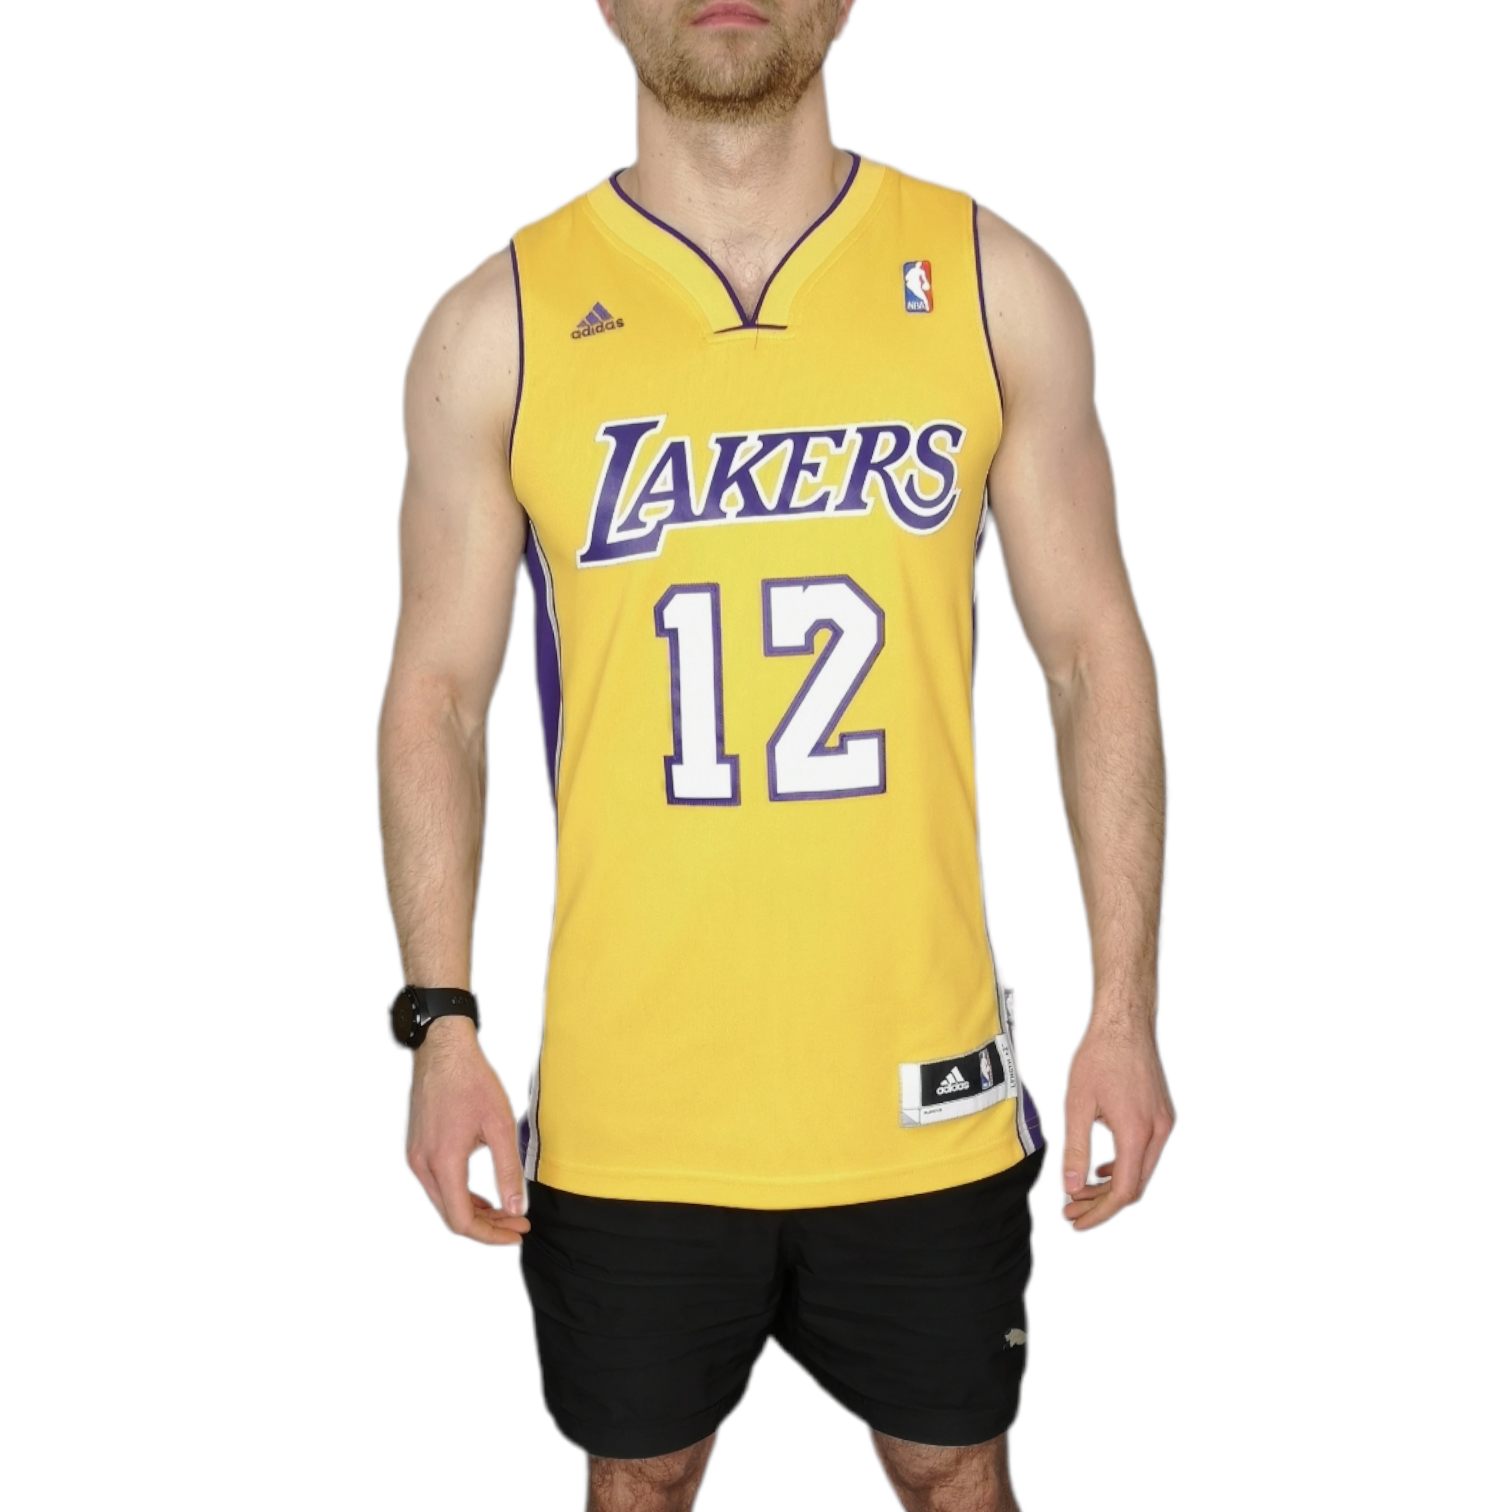 Adidas NBA LA Lakers 12 Dwight Howard Basketball Jersey - Size